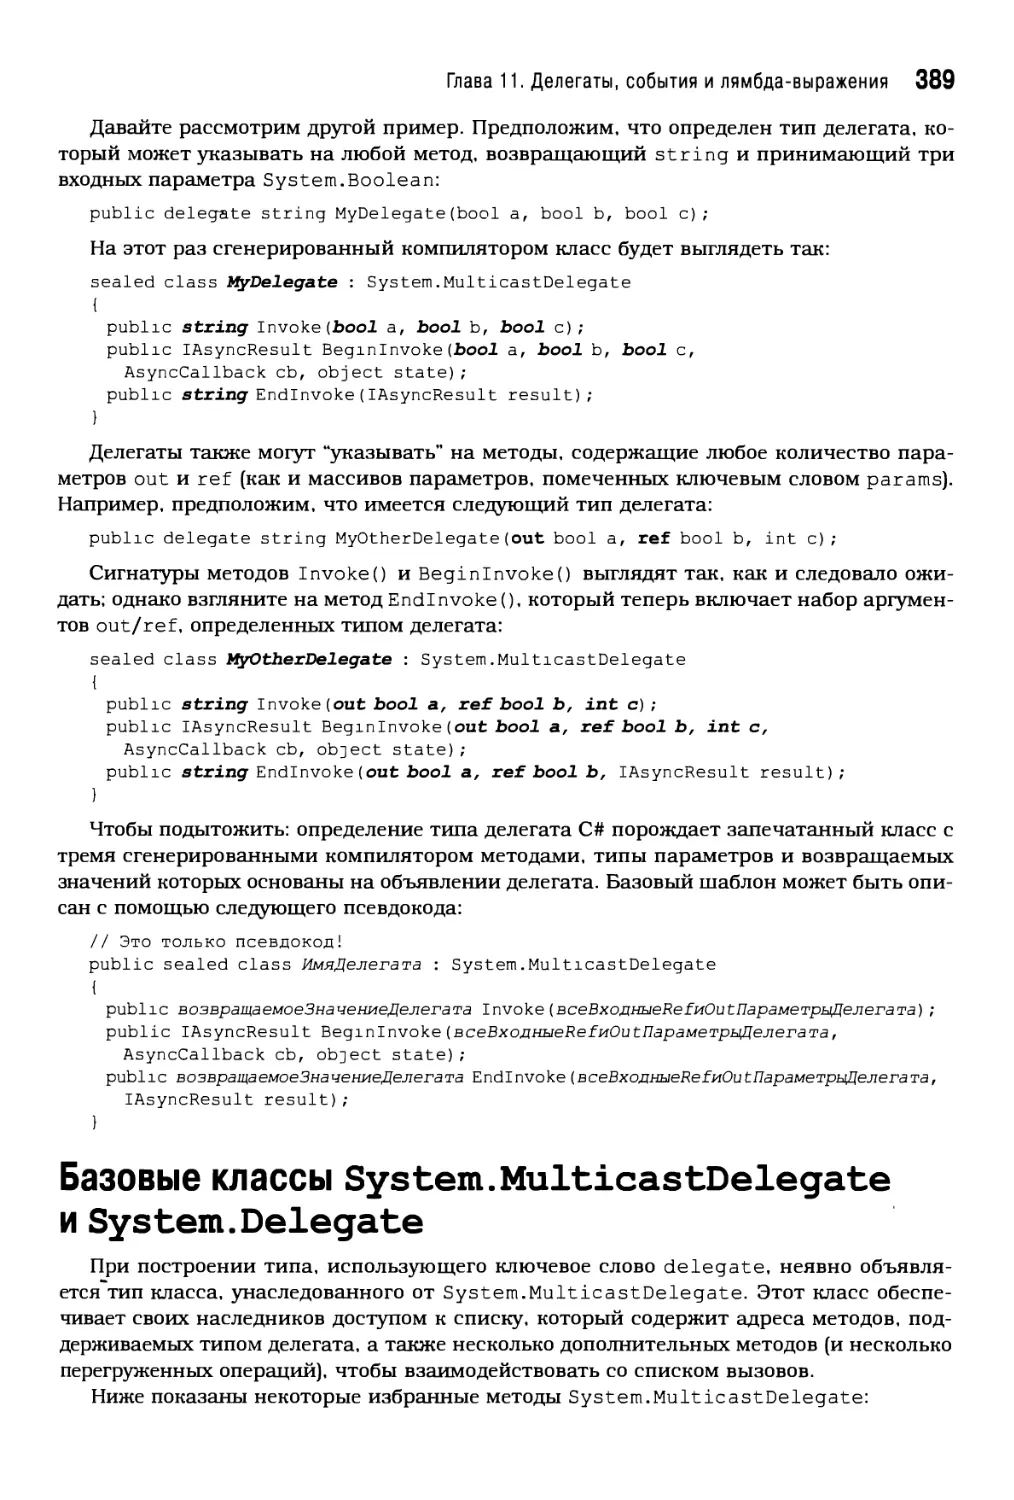 Базовые классы System.MulticastDelegate и System.Delegate